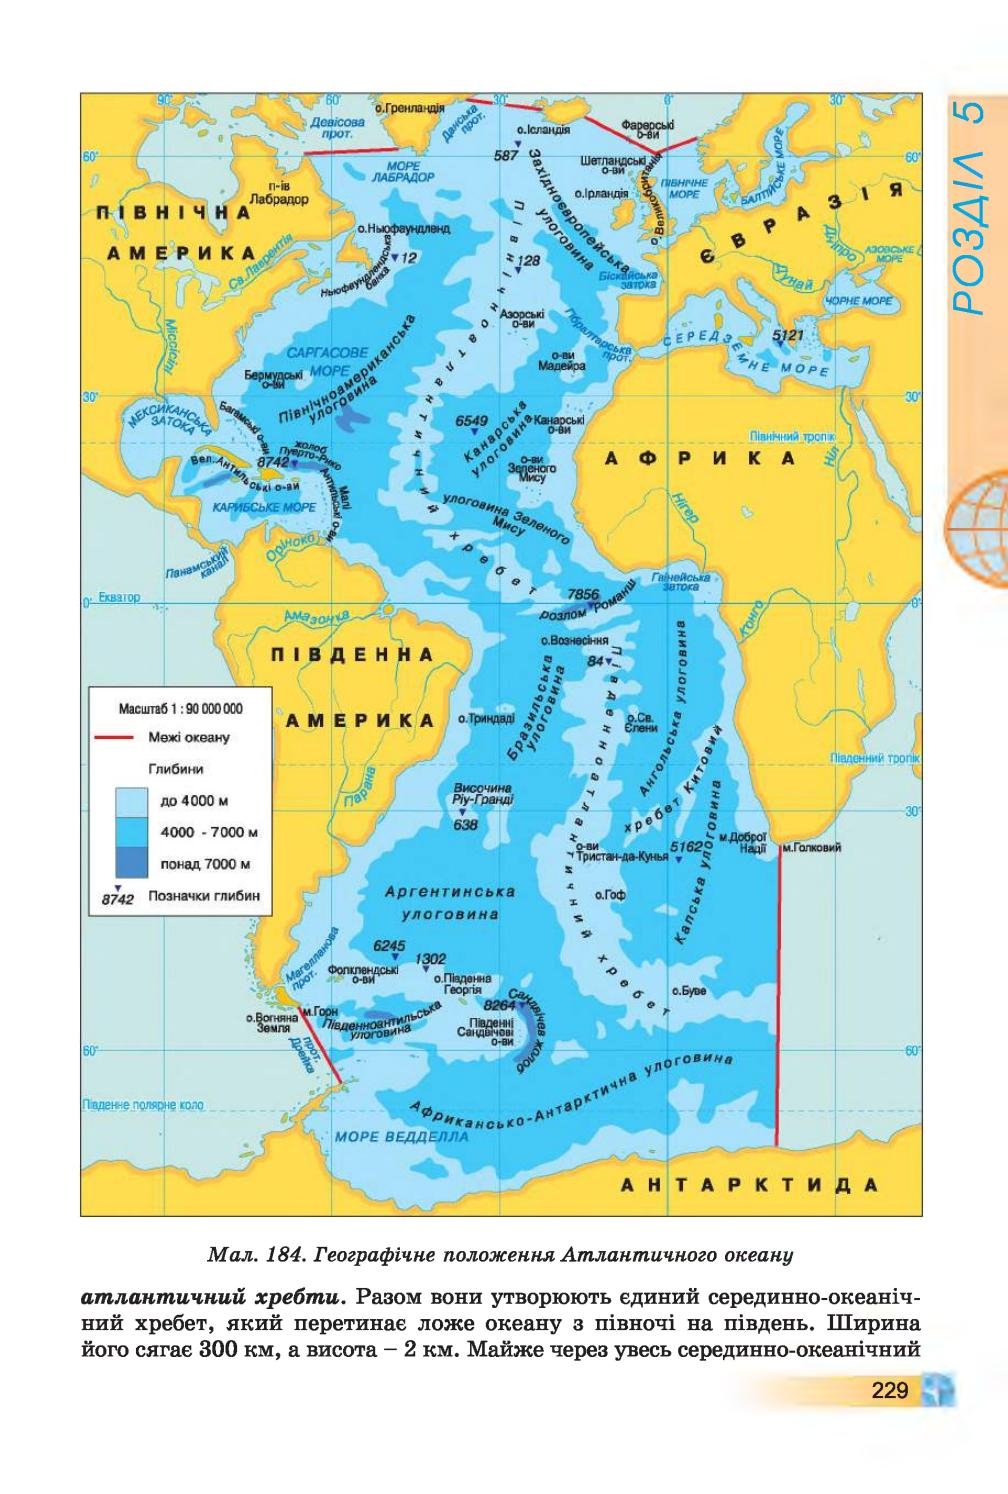 Моря Северной Атлантики на карте